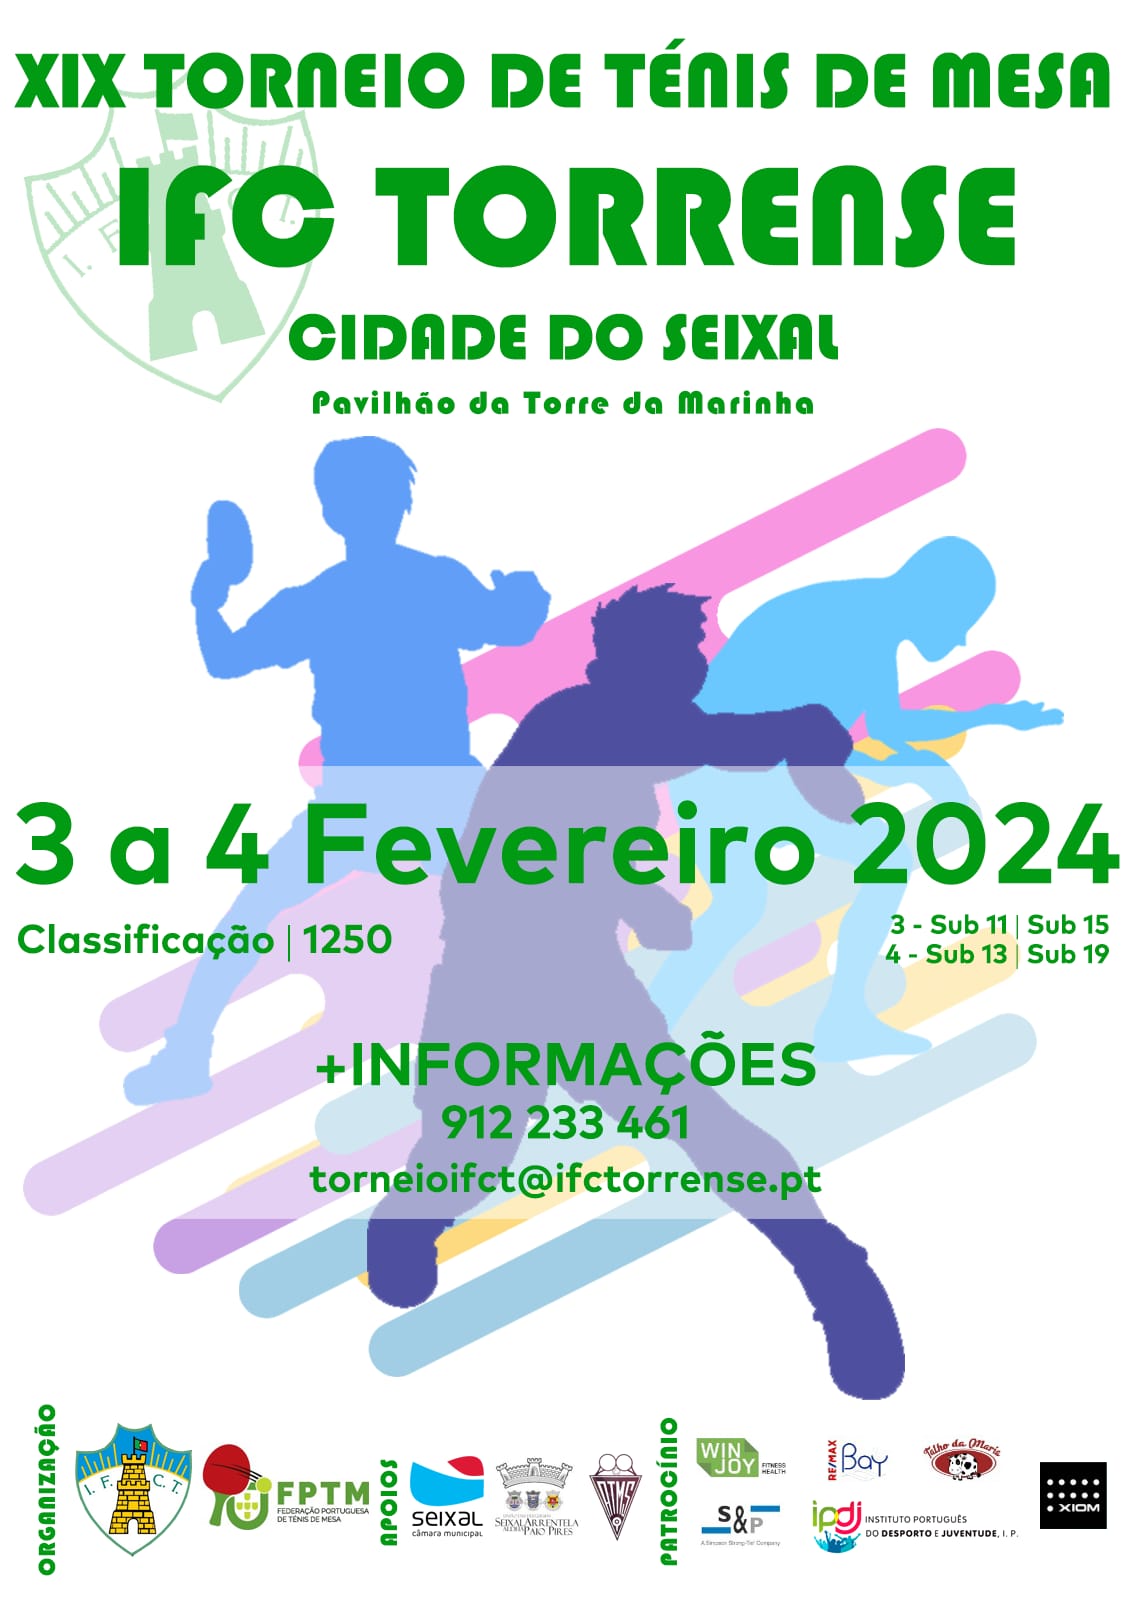 XIX Torneio IFC Torrense/Cidade do Seixal a 3 e 4 de fevereiro